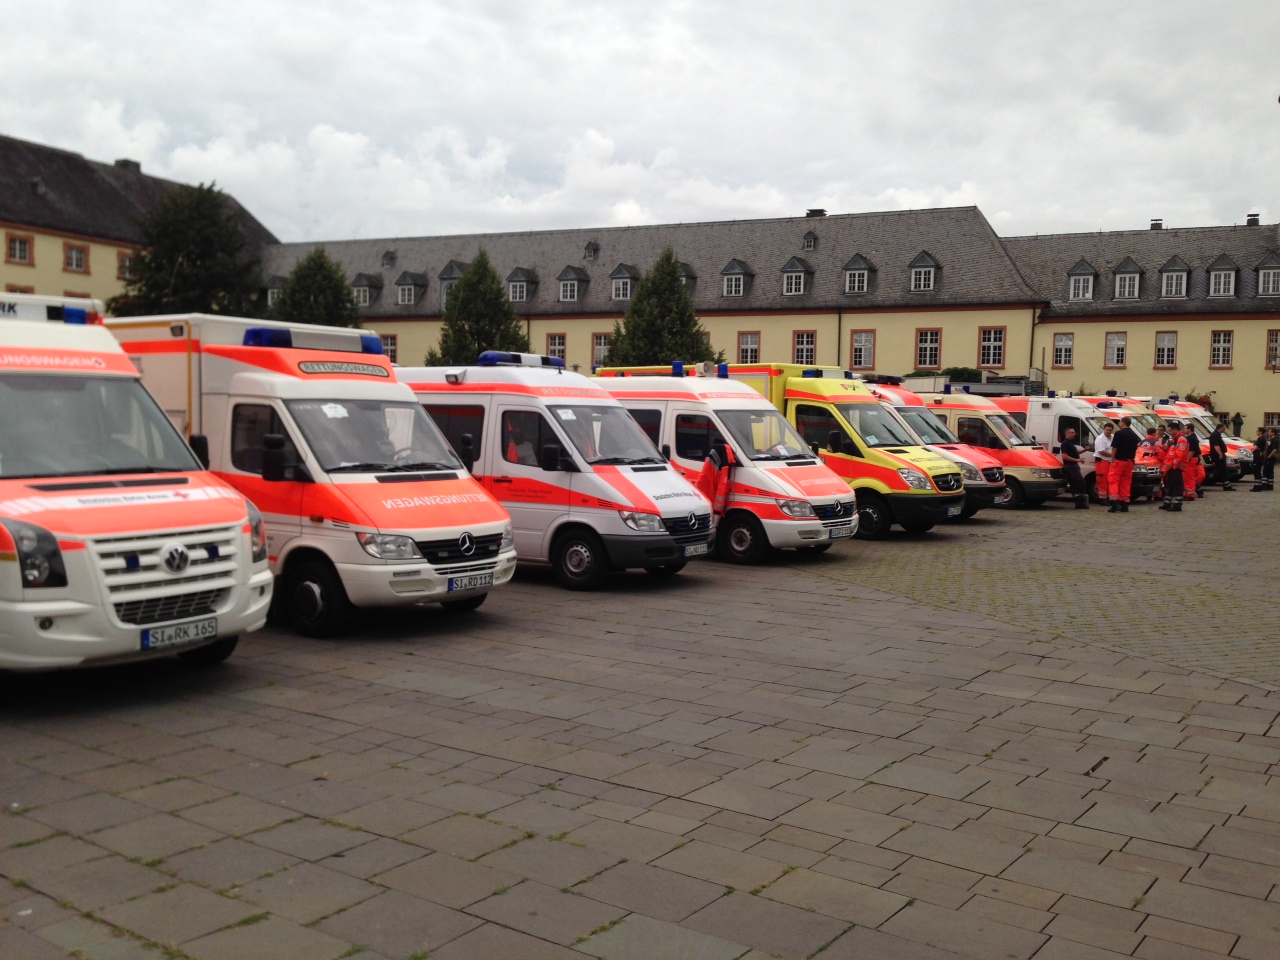 Rettungs- /Krankenwagen des DRK und Malteser standen auf dem Platz am Unteren Schloß in Bereitschaft für den geordneten Patiententransport